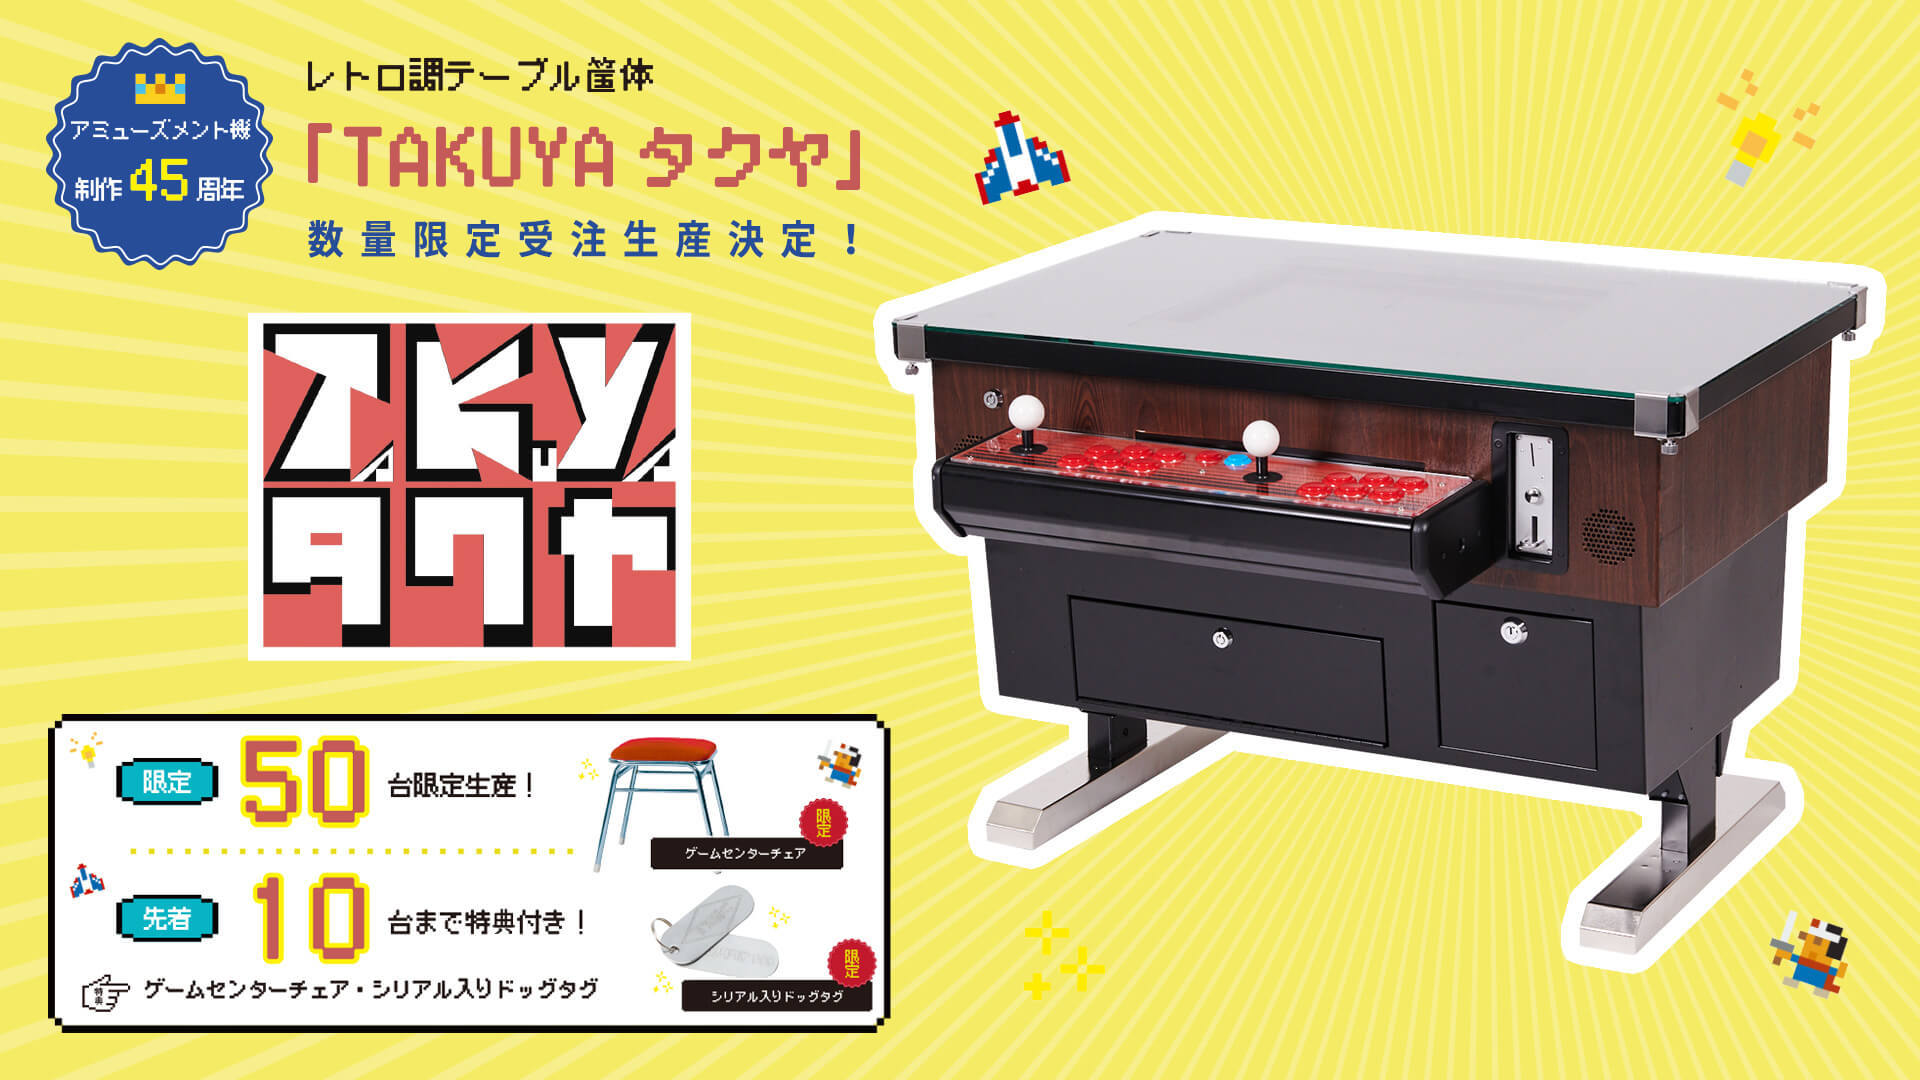 昭和のあの“テーブル型ゲーム筐体”がよみがえる 50台限定で受注販売 